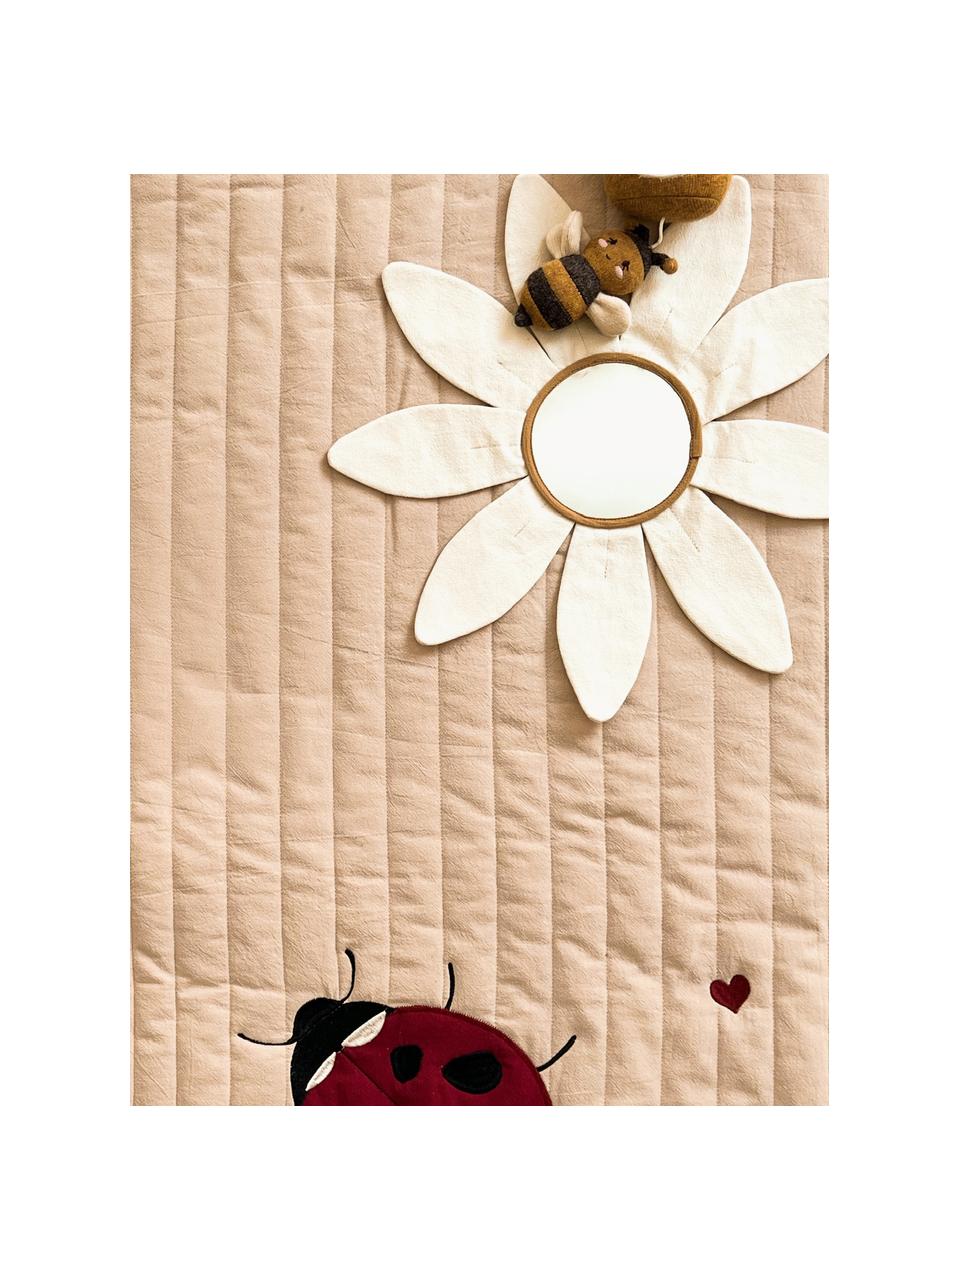 Tapis de jeu en coton Ladybug, Coton, Beige, multicolore, larg. 120 x long. 120 cm